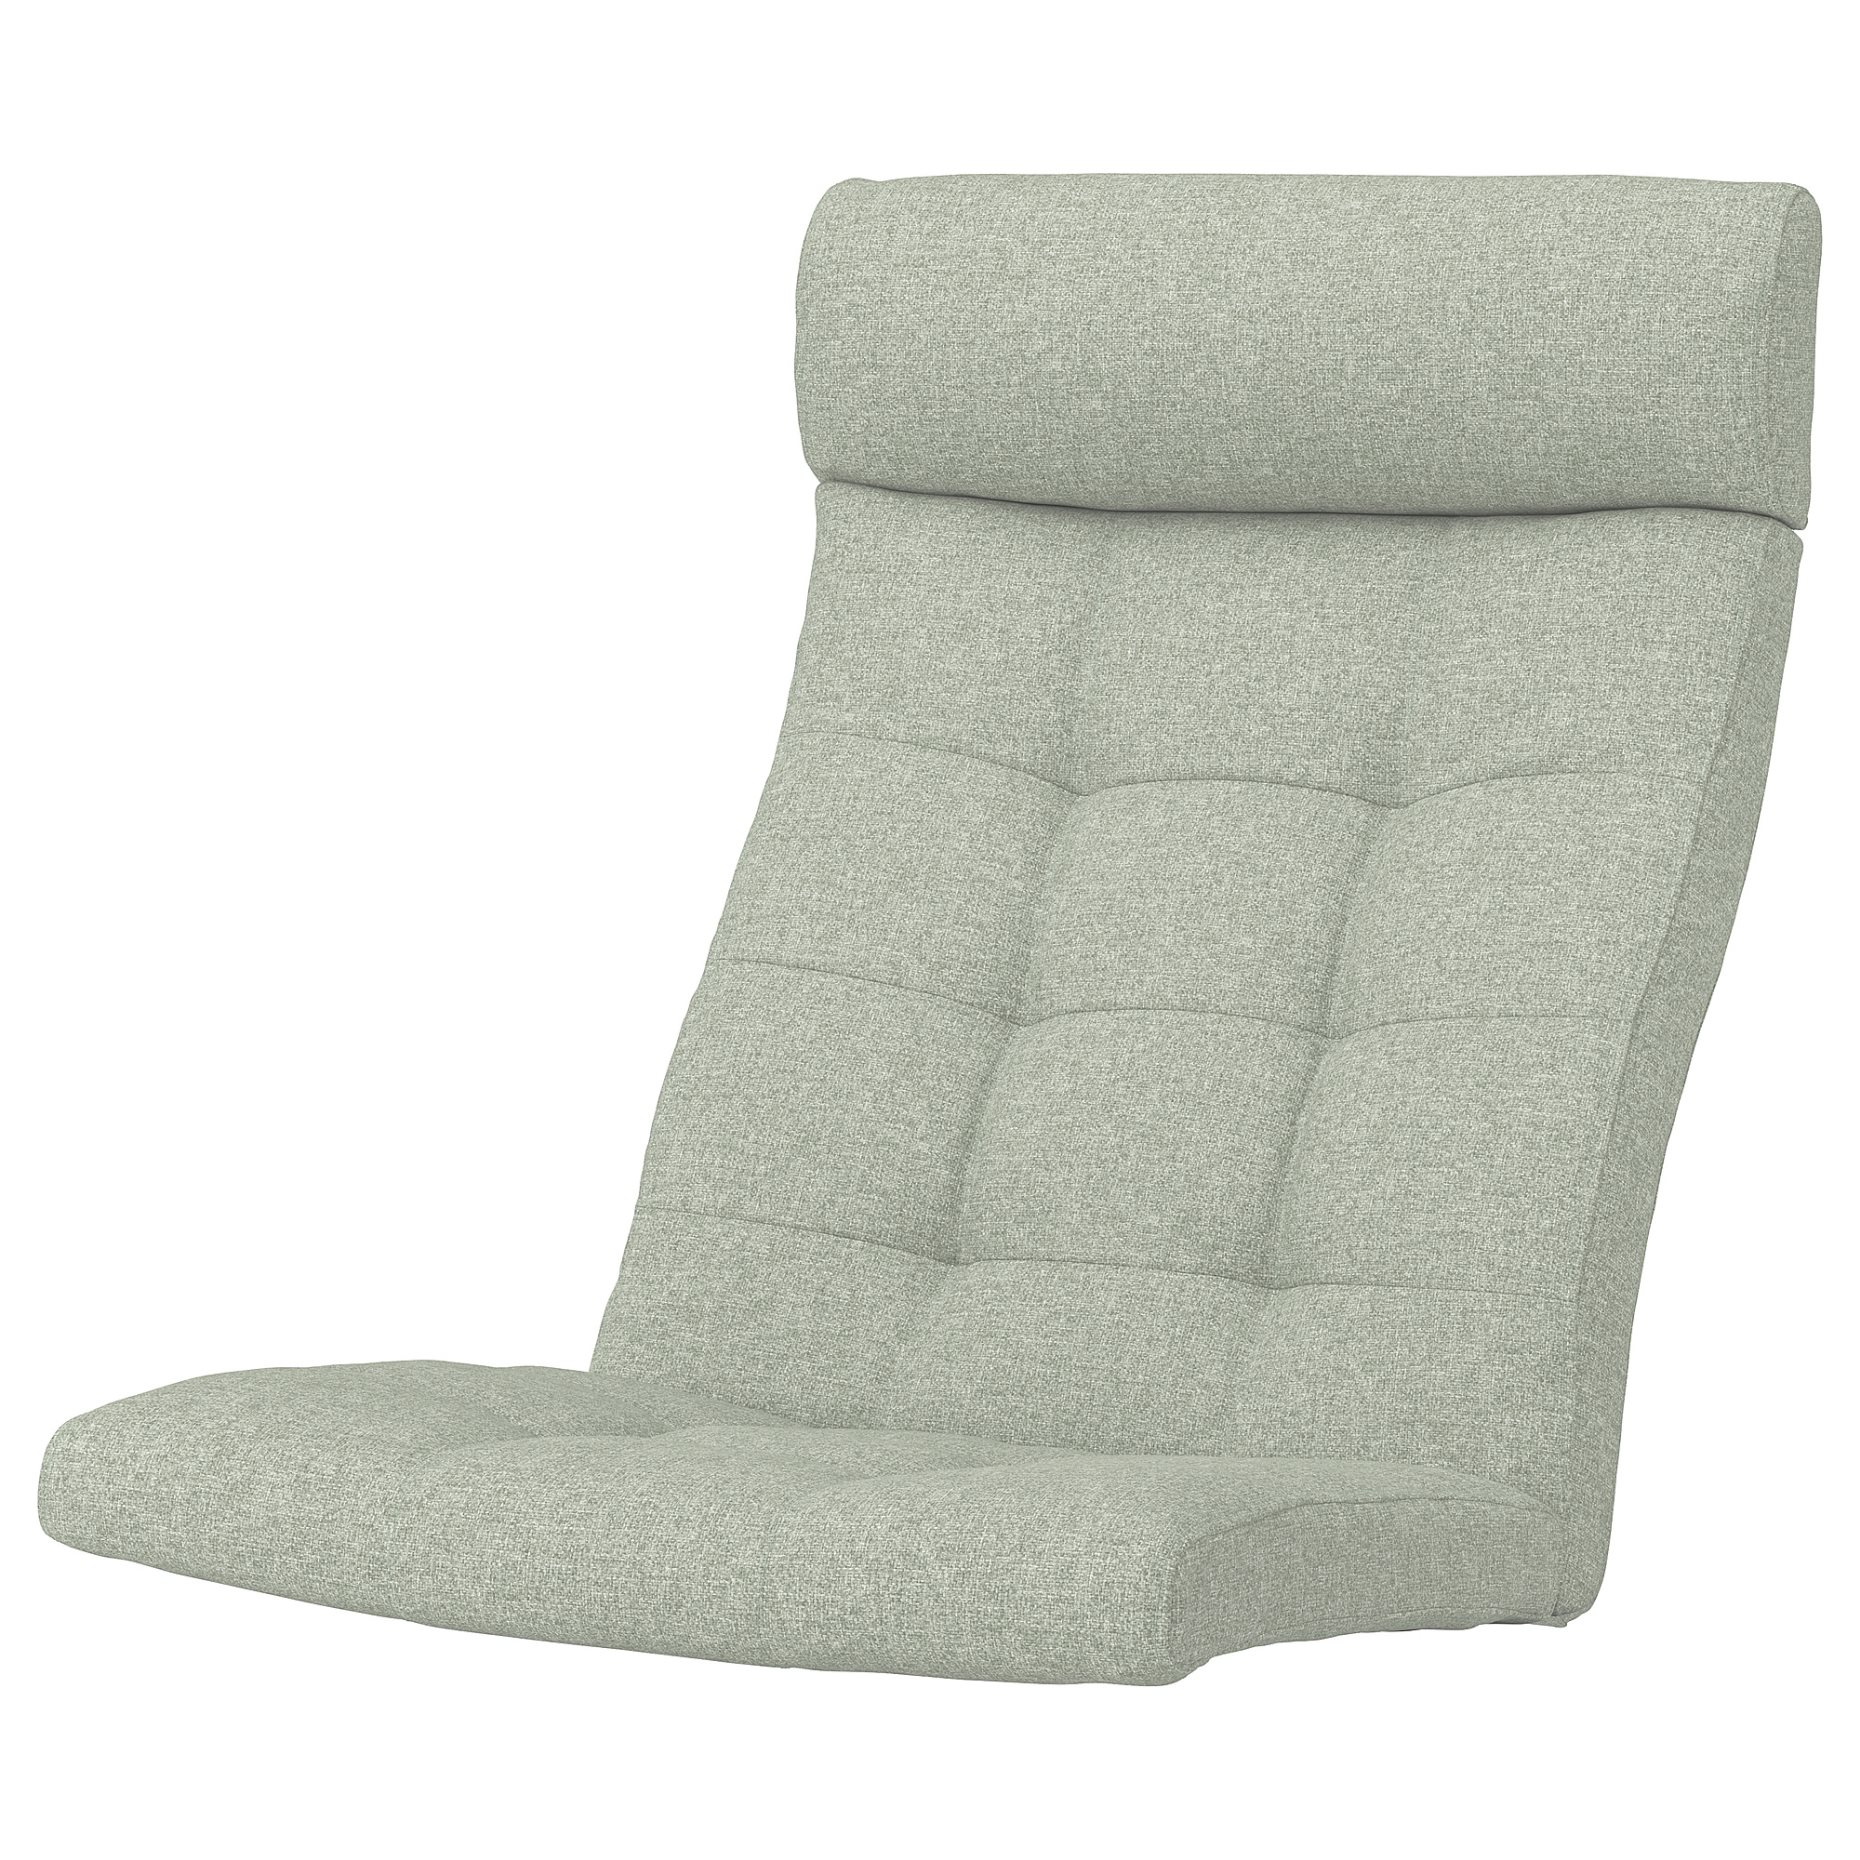 POÄNG, armchair cushion, 105.493.91